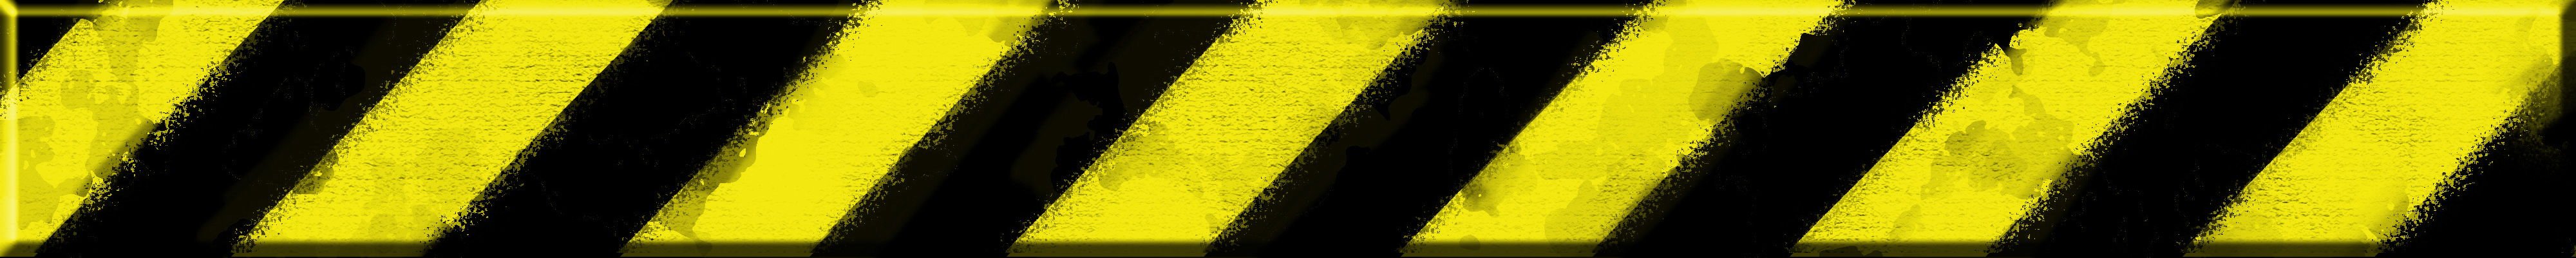 tplimg:blackrabbit:yellow-black-baustelle_embossed_bar.jpg